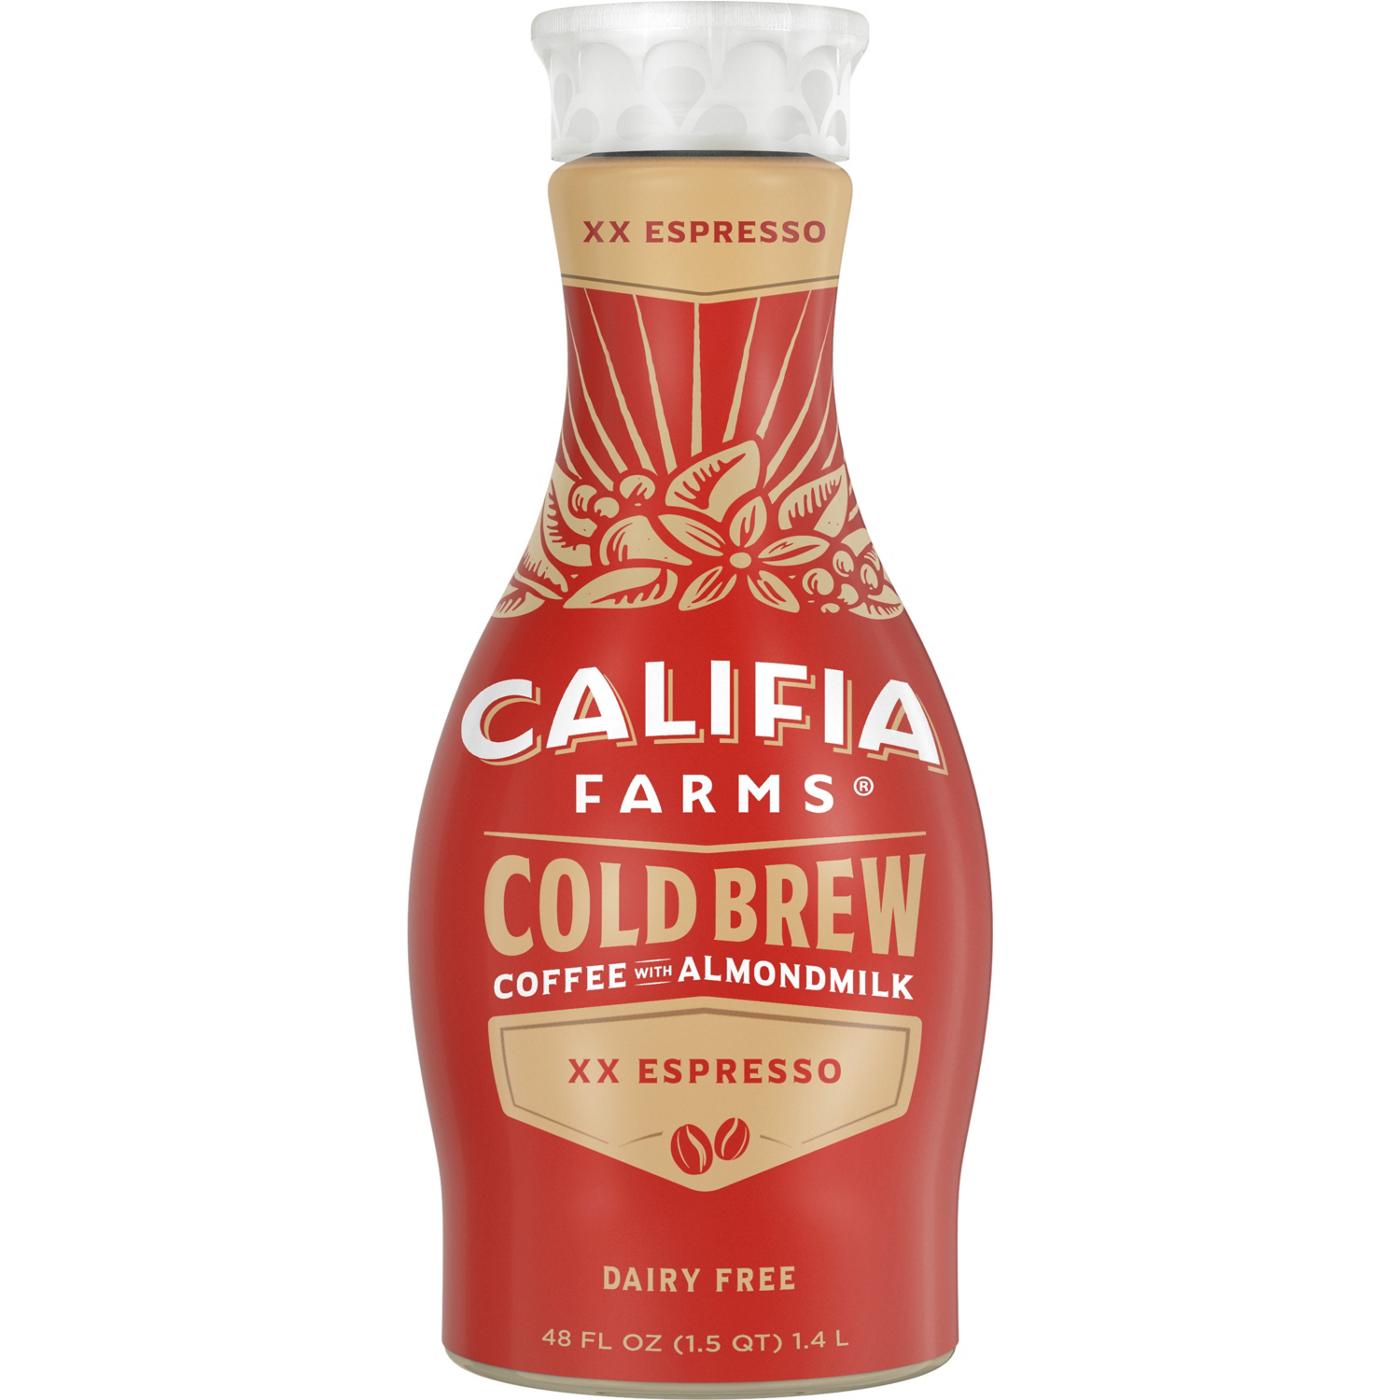 Califia Farms Cold Brew Coffee & Almond Milk Double Espresso; image 1 of 2